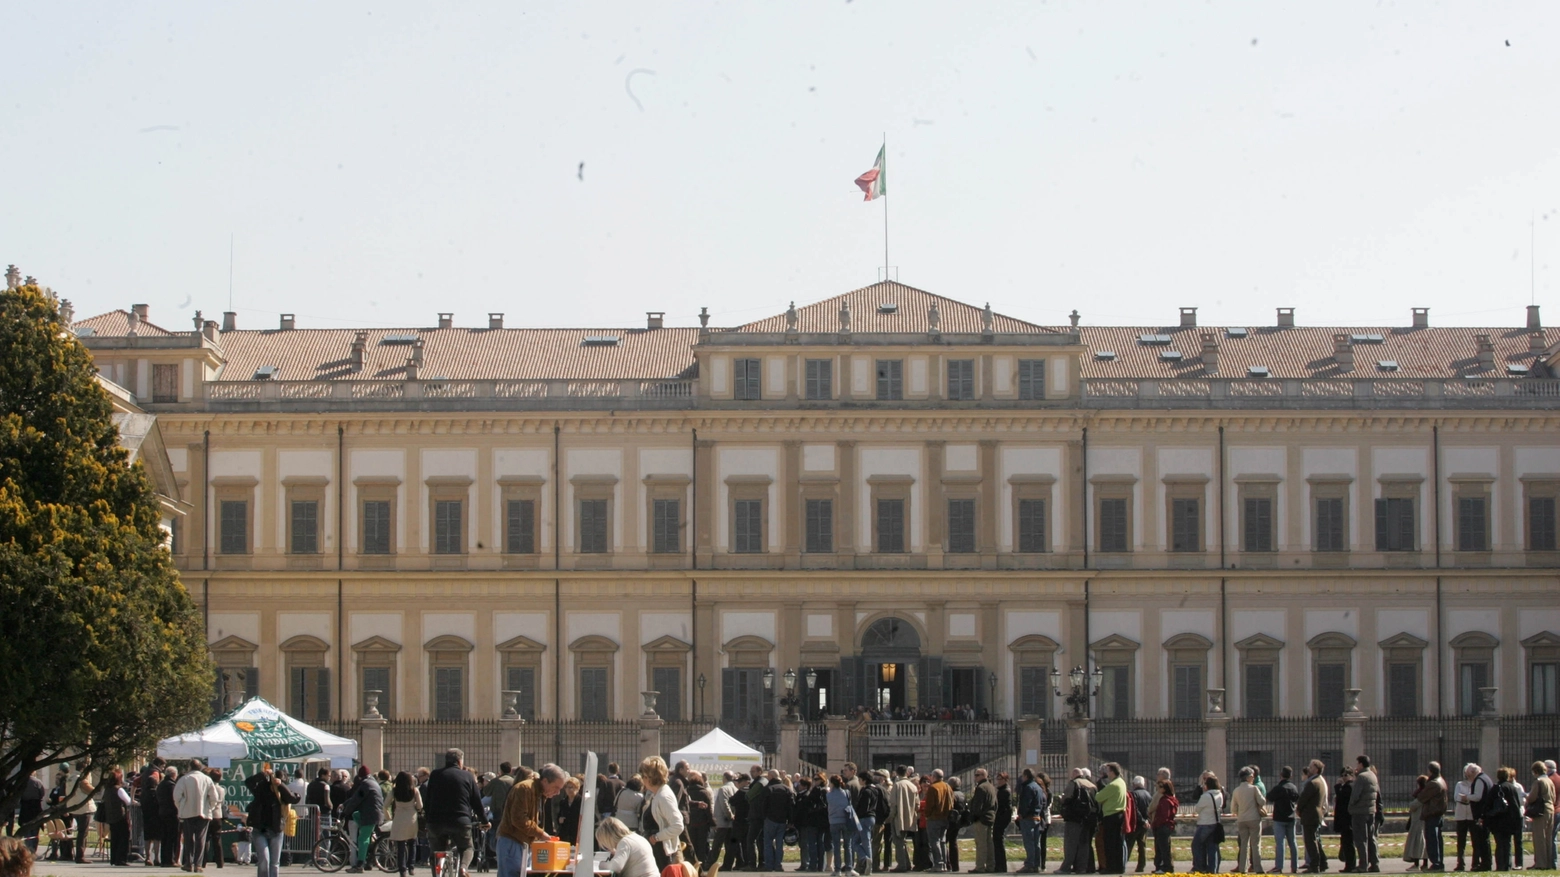 Visitatori in coda per entrare alla Villa Reale di Monza